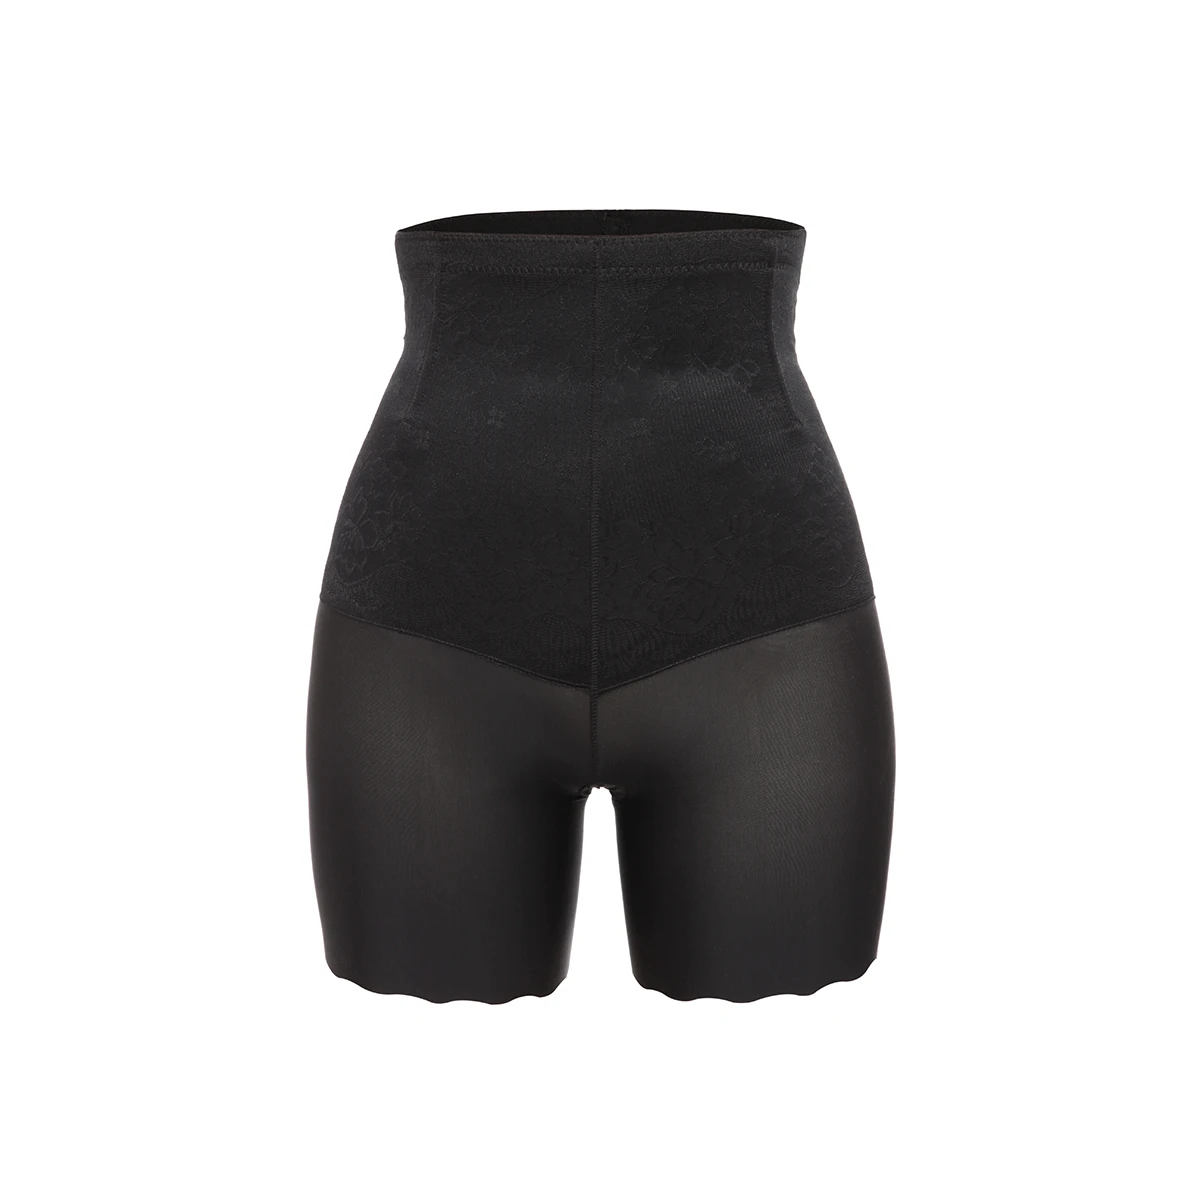 Joyshaper Women Shapewear Waist Trainer Body Shapers Butt Lifter Panties  Slimming Belly Tummy Shaper Control Slimming Underwear|Control Panties| -  AliExpress